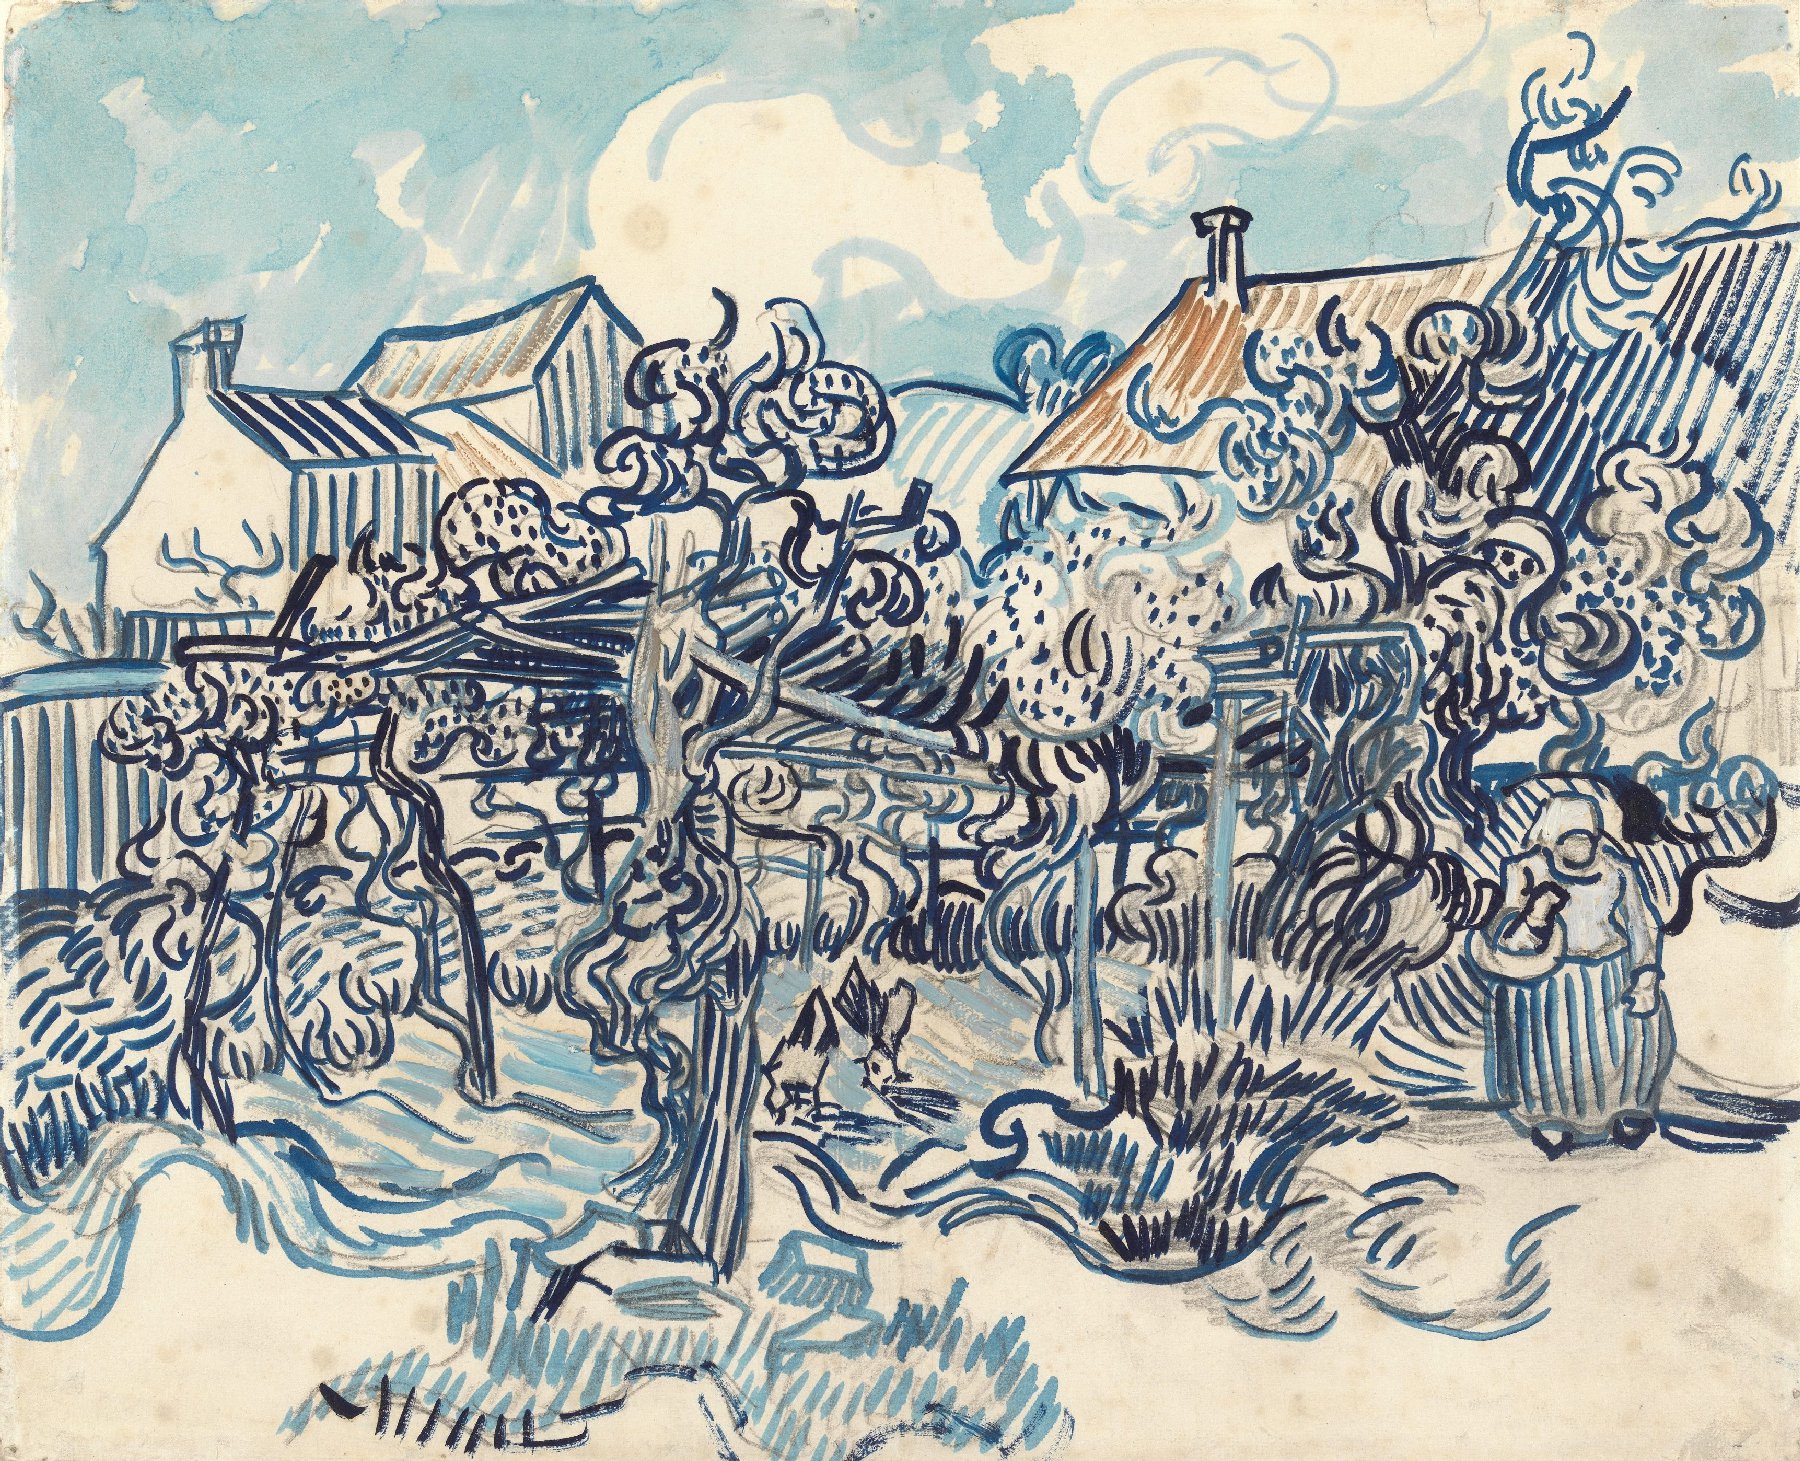 Oude wijngaard met boerin Vincent van Gogh (1853 - 1890), Auvers-sur-Oise, mei 1890